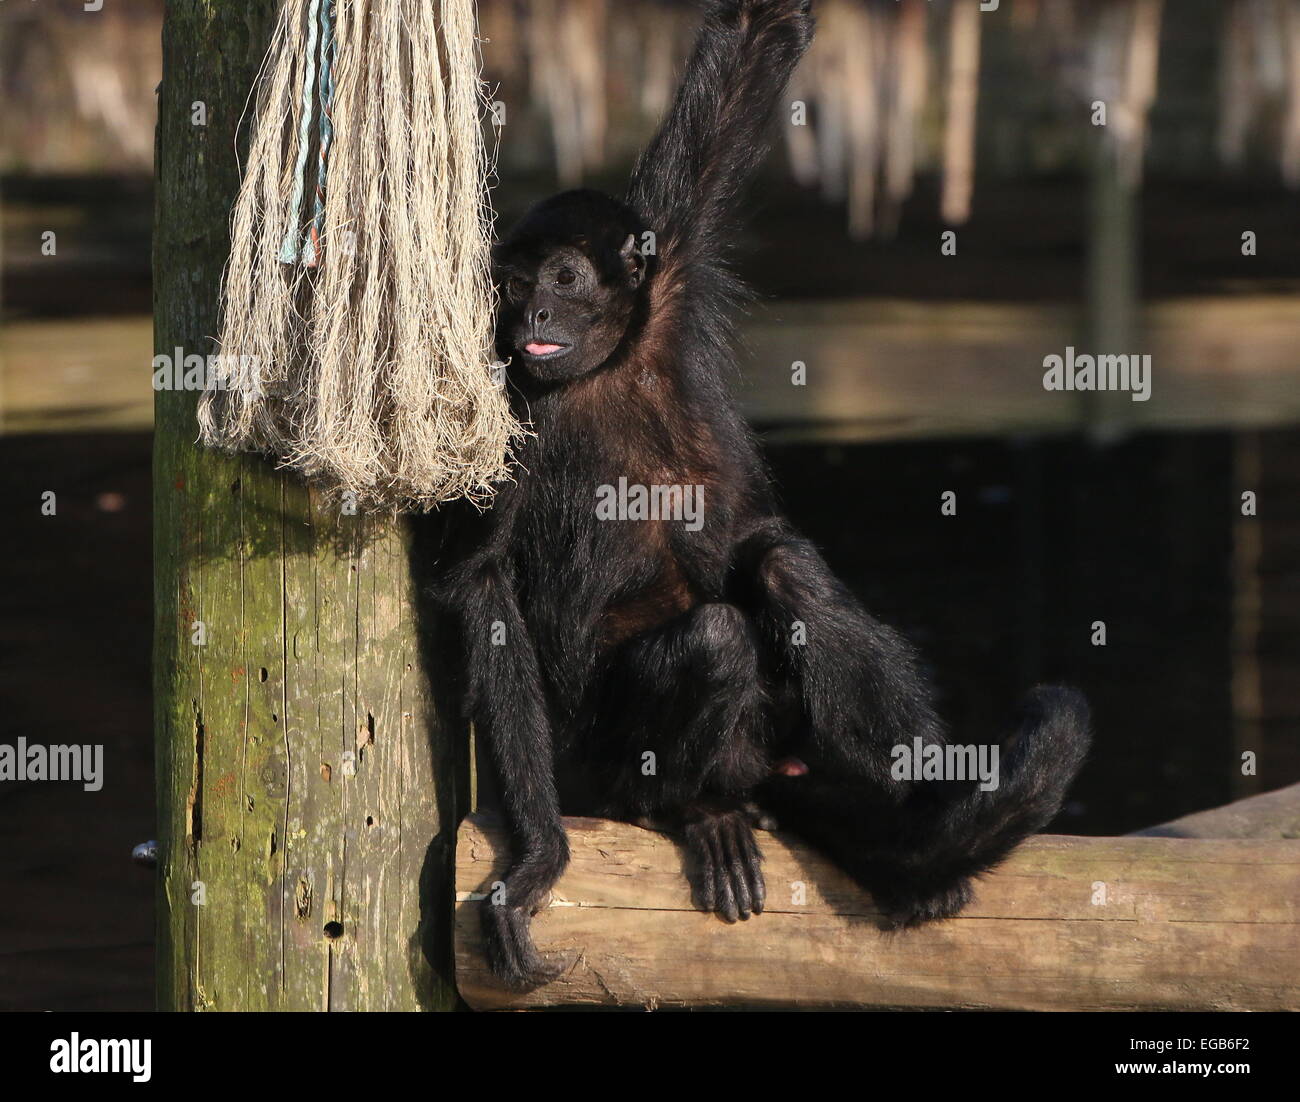 Cabeza negra colombiana mono araña (Ateles fusciceps robustus) en el zoo de Emmen, Países Bajos Foto de stock